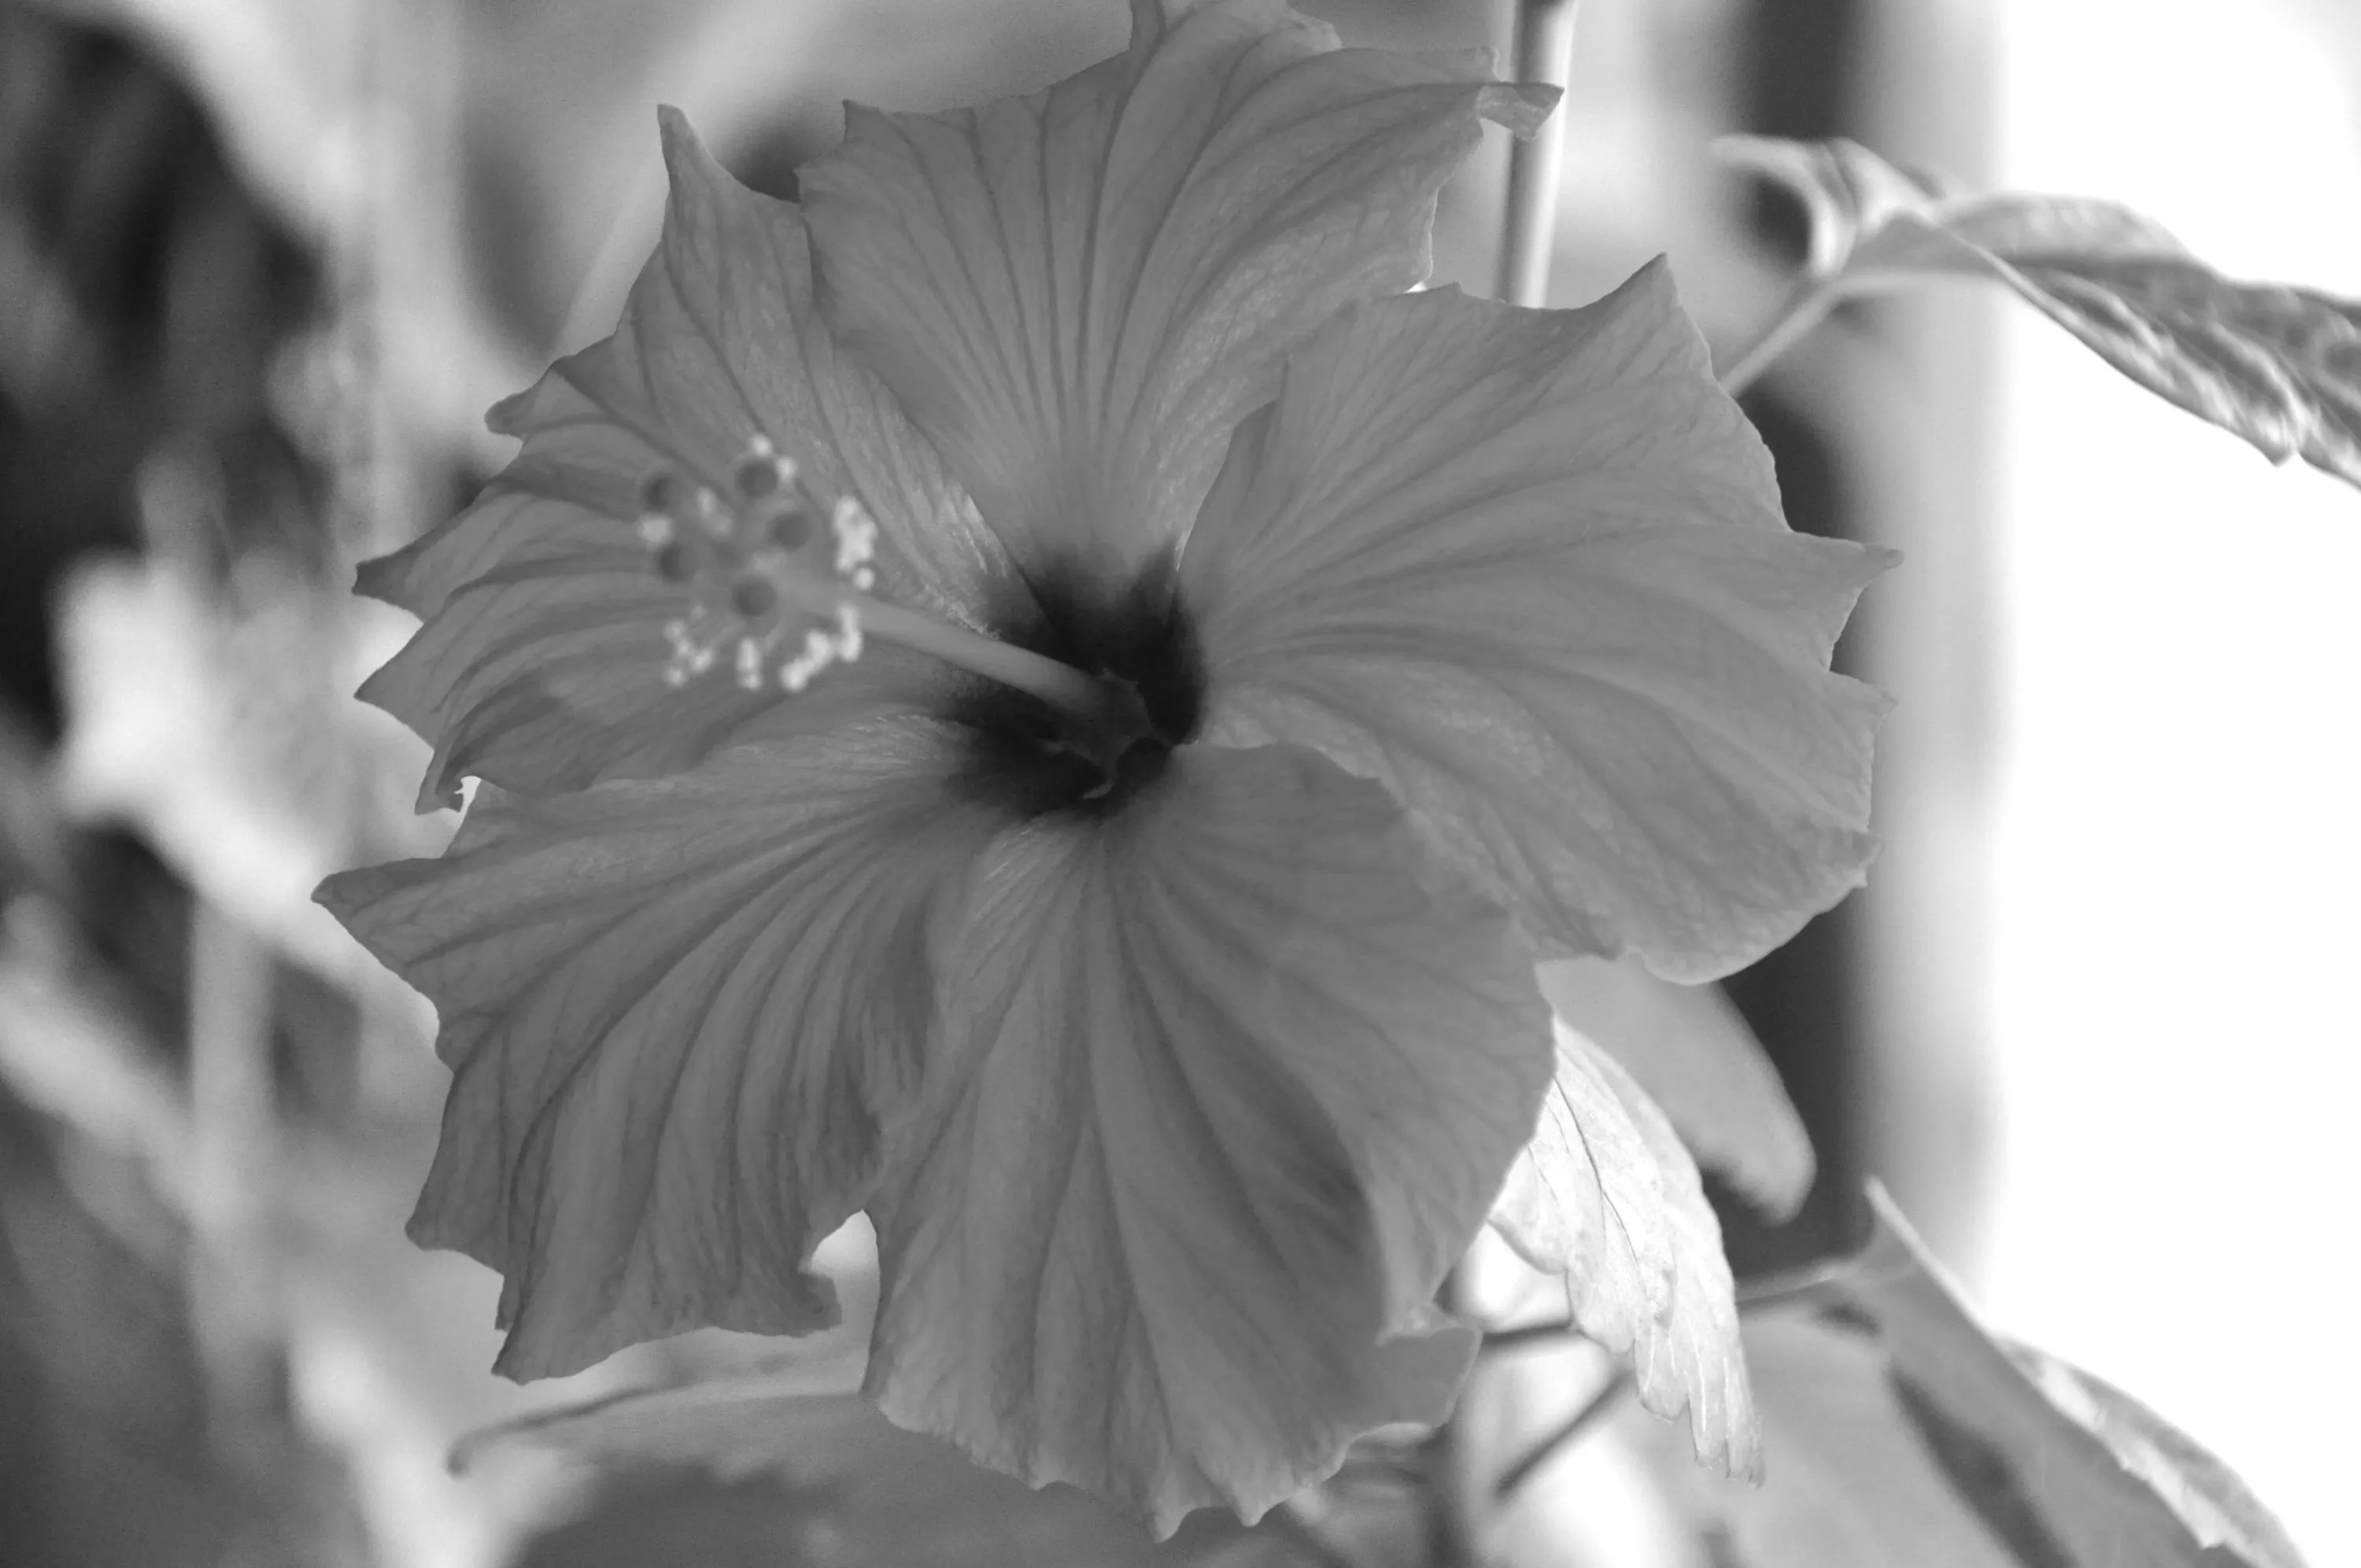 Photographie d'un hibiscus en noir et blanc